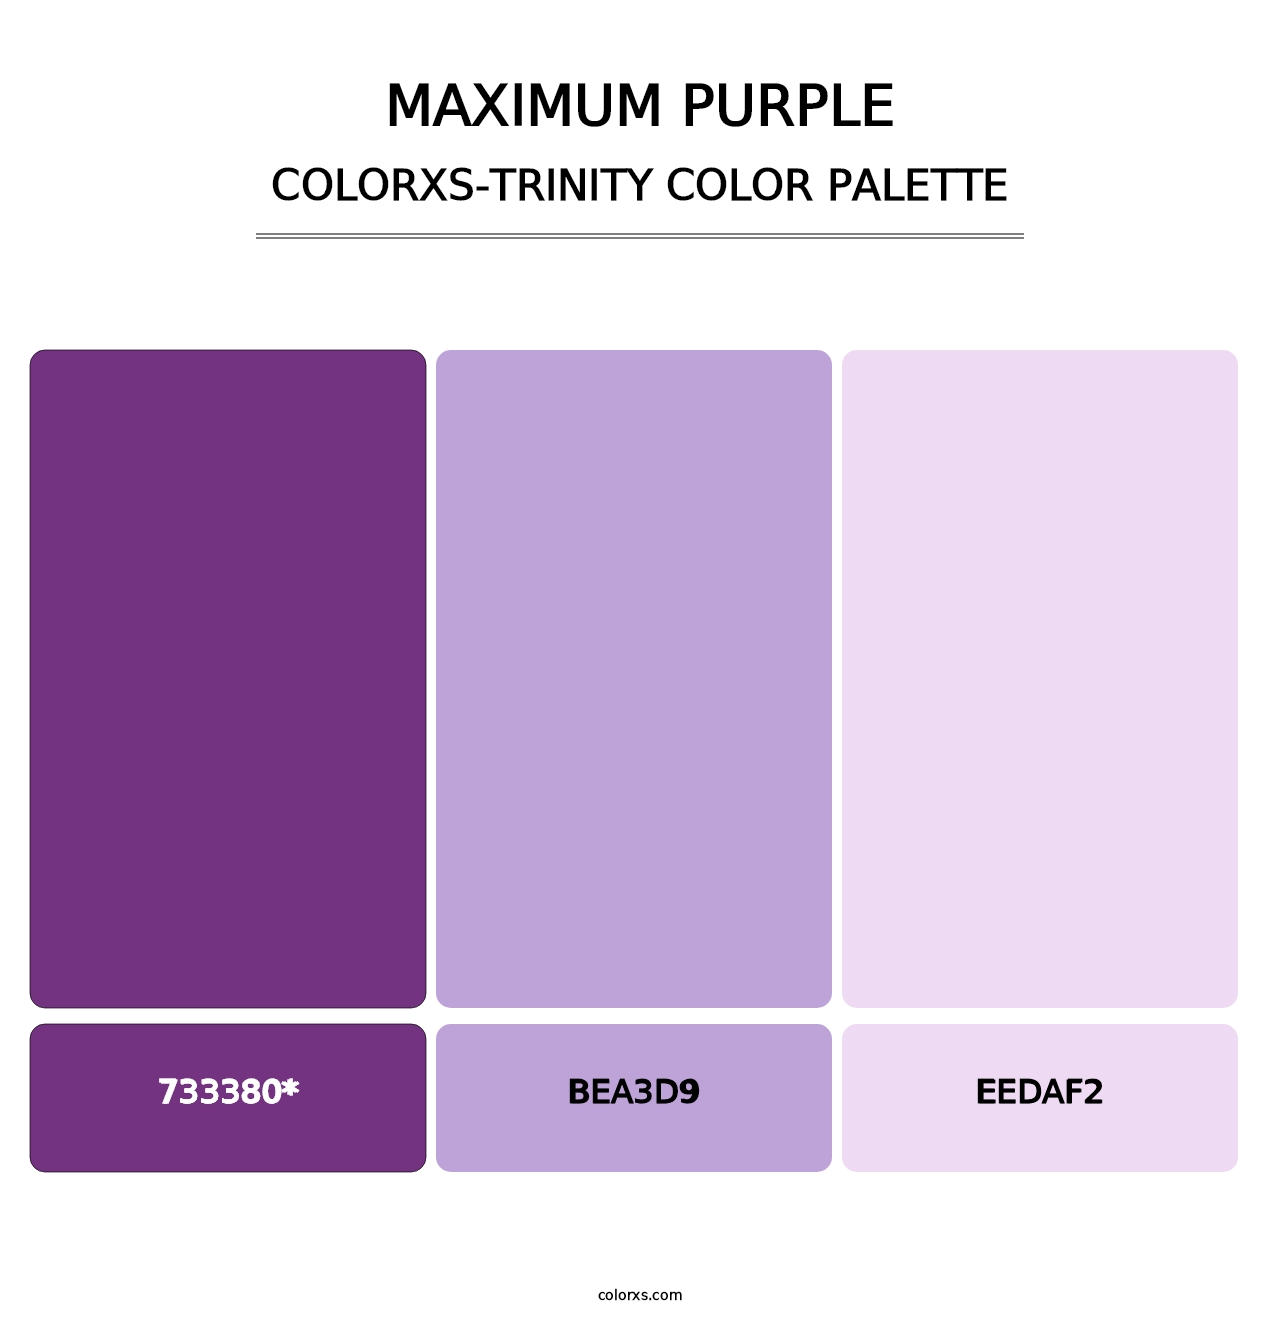 Maximum Purple - Colorxs Trinity Palette